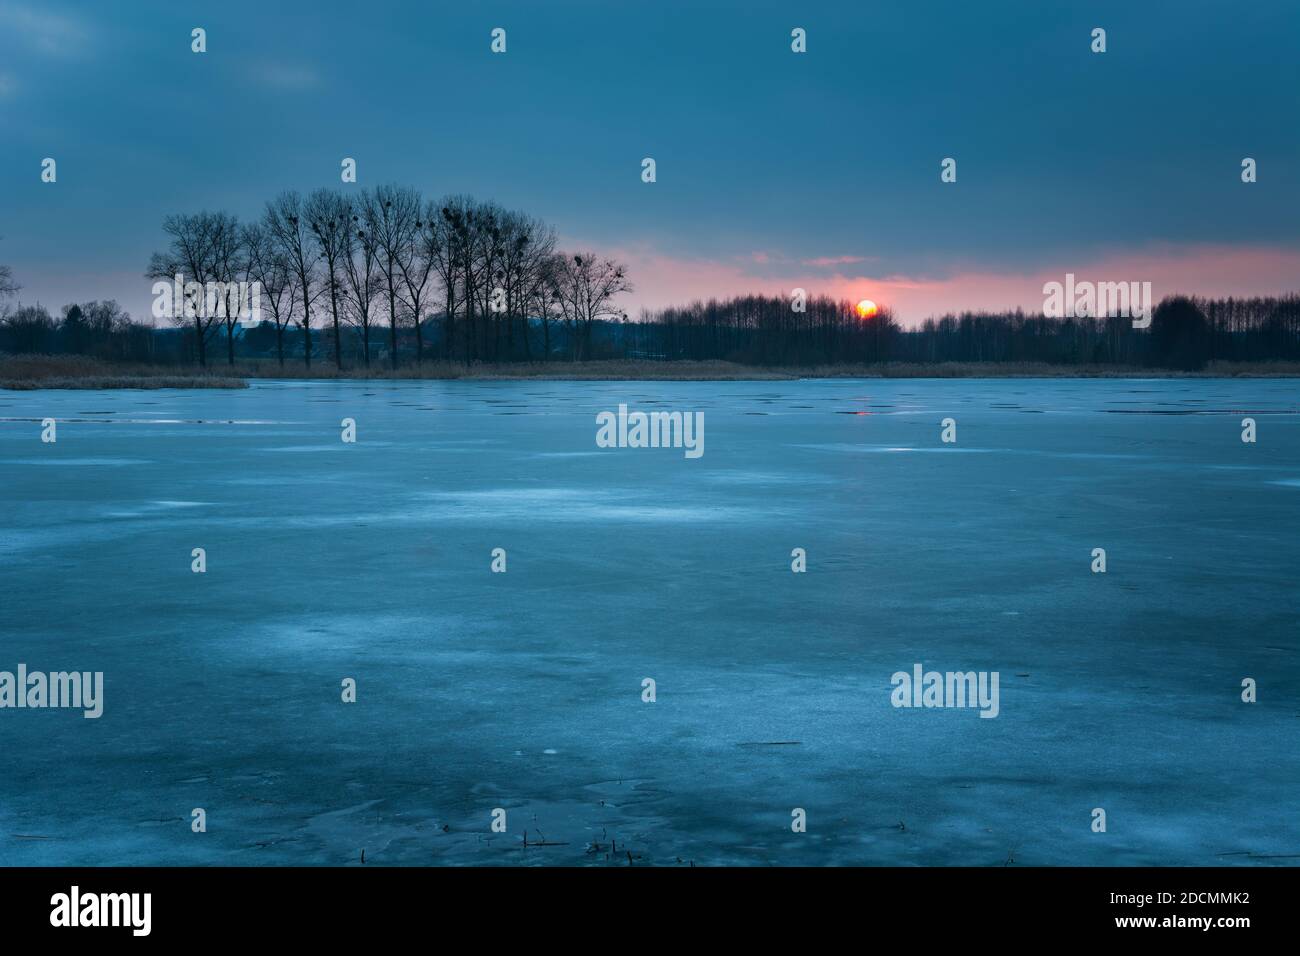 Lac gelé, arbres et ciel du soir avec coucher de soleil, vue en hiver Banque D'Images